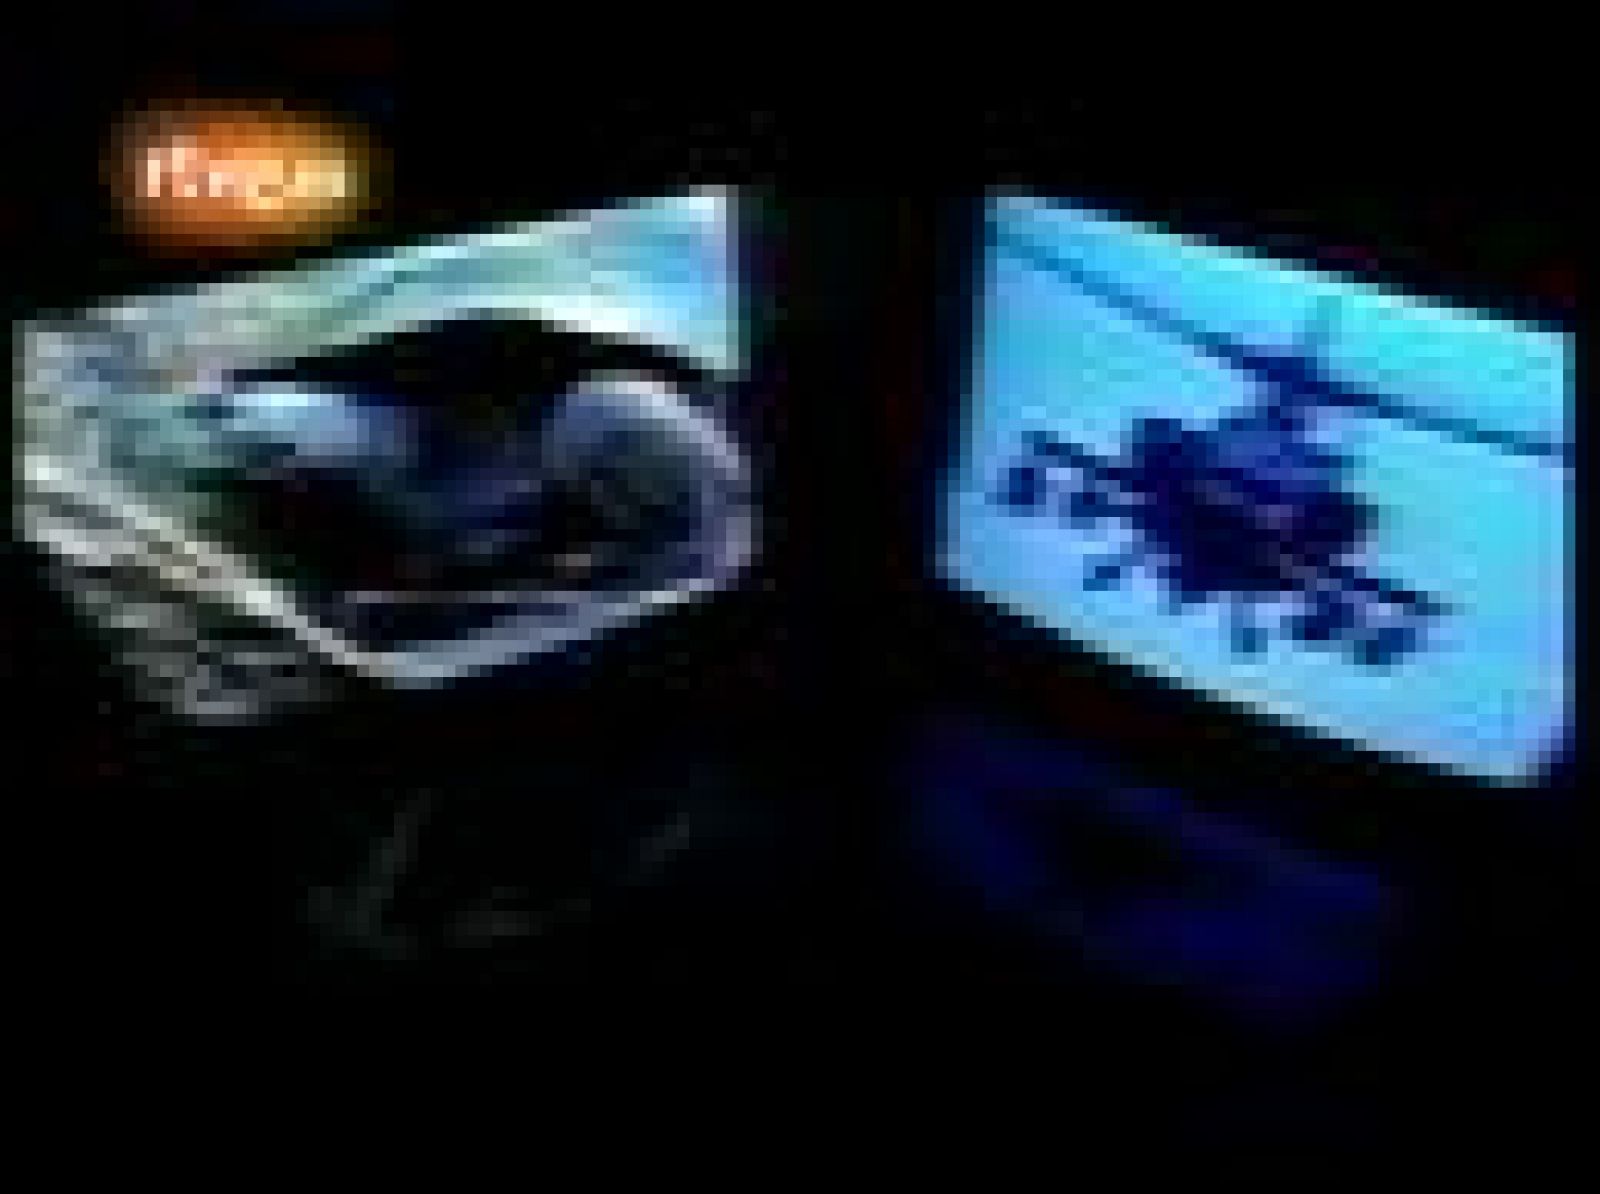  Así era la cabecera de 'La 2 Noticias' en 1994, año en que empezó a emitirse. Nacía la enseña gráfica del programa con un aspecto muy dinámico, llena de imágenes impactantes y acompañada por el 'Tchi-thi-tchi', el ruido de los monitores al encenderse que era lo primero que se oía. Con el tiempo, ese sonido es uno de los grandes mitos del programa.